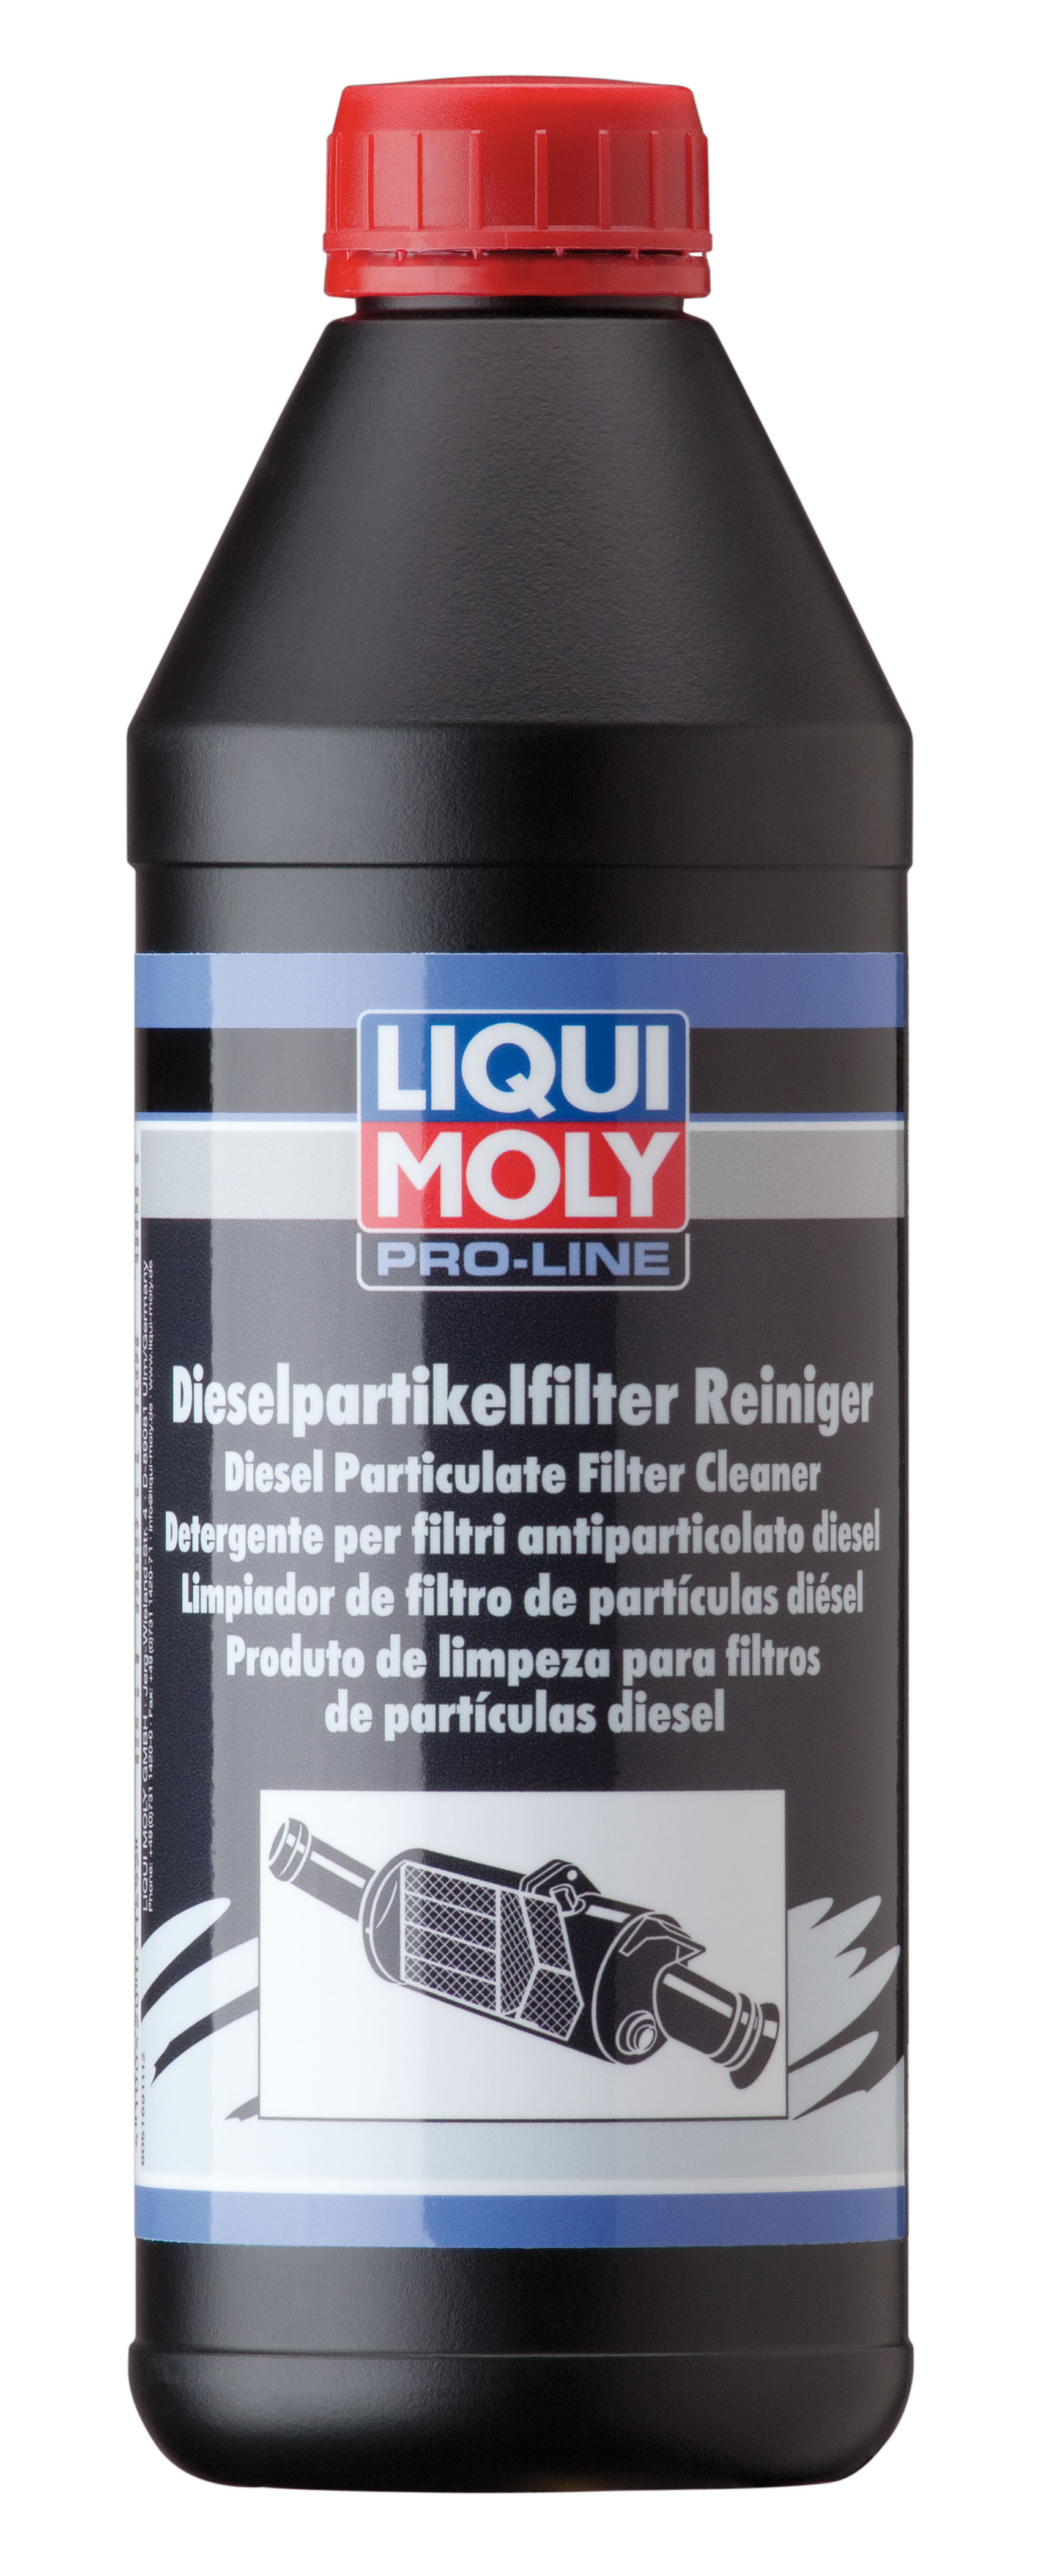 LIQUI MOLY PRO-LINE DIESEL PARTIKELFILTER REINIGER Очиститель дизельного сажевого фильтра для грузовых автомобилей